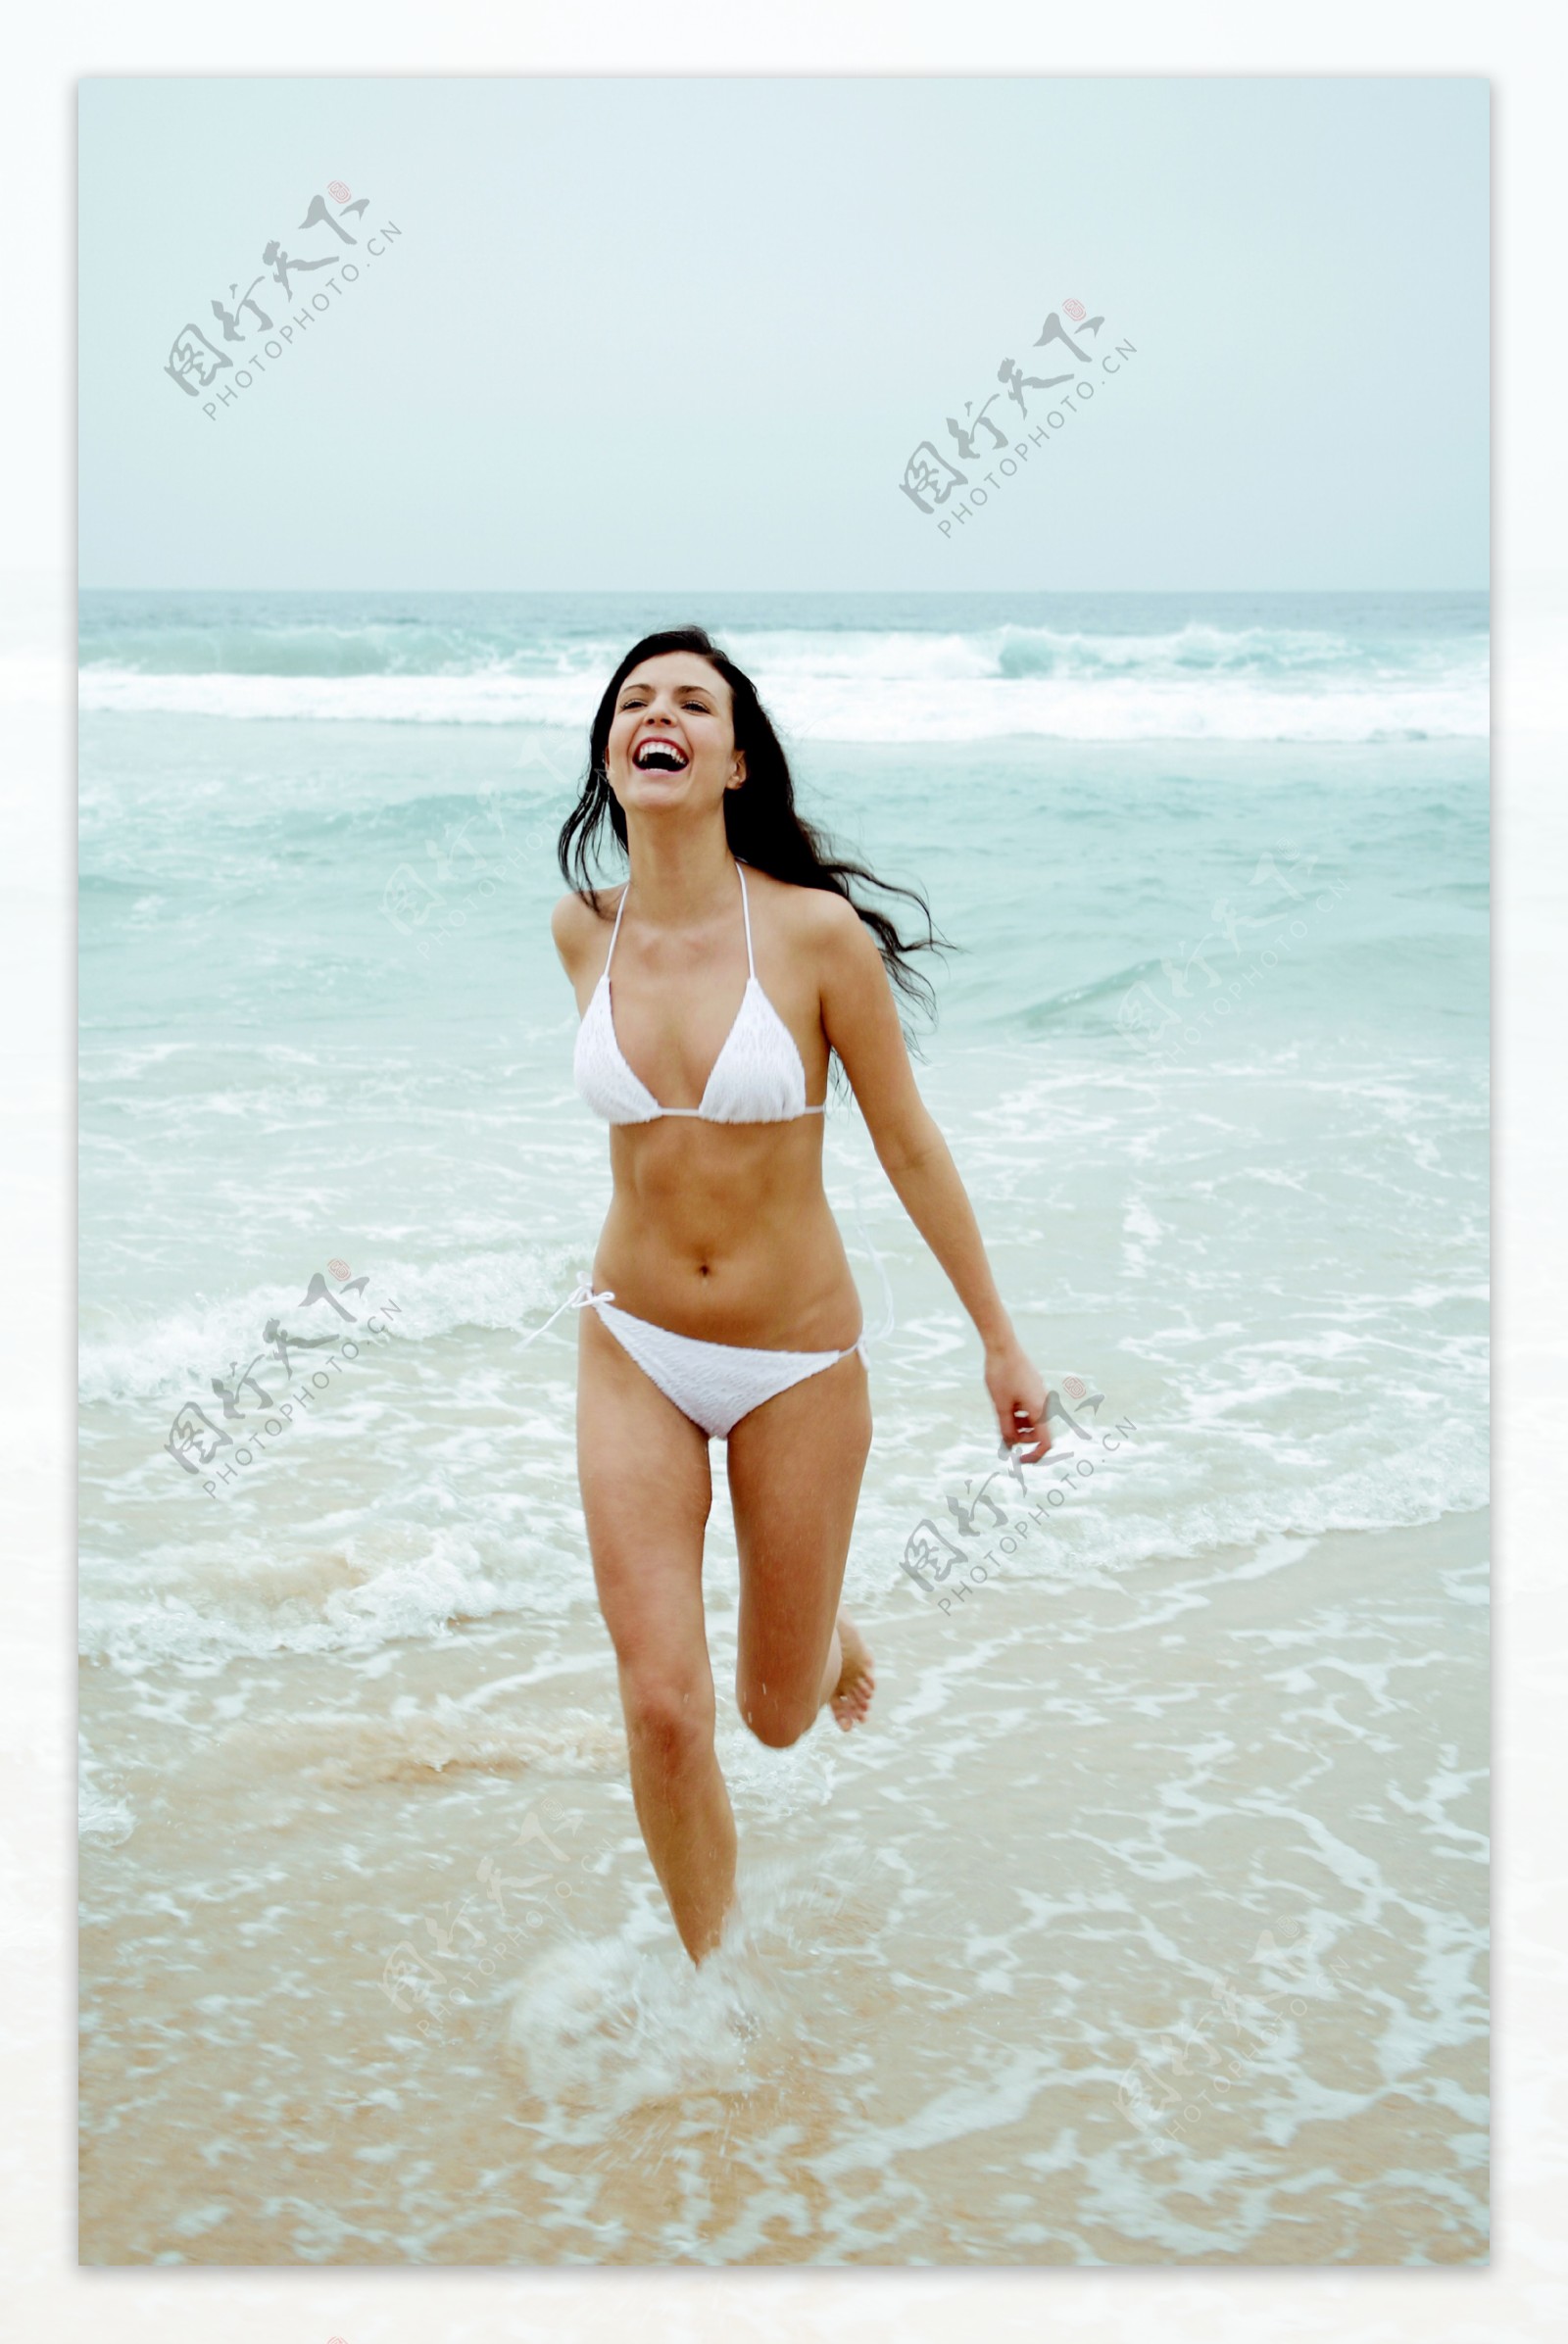 海滩奔跑的比基尼美女图片